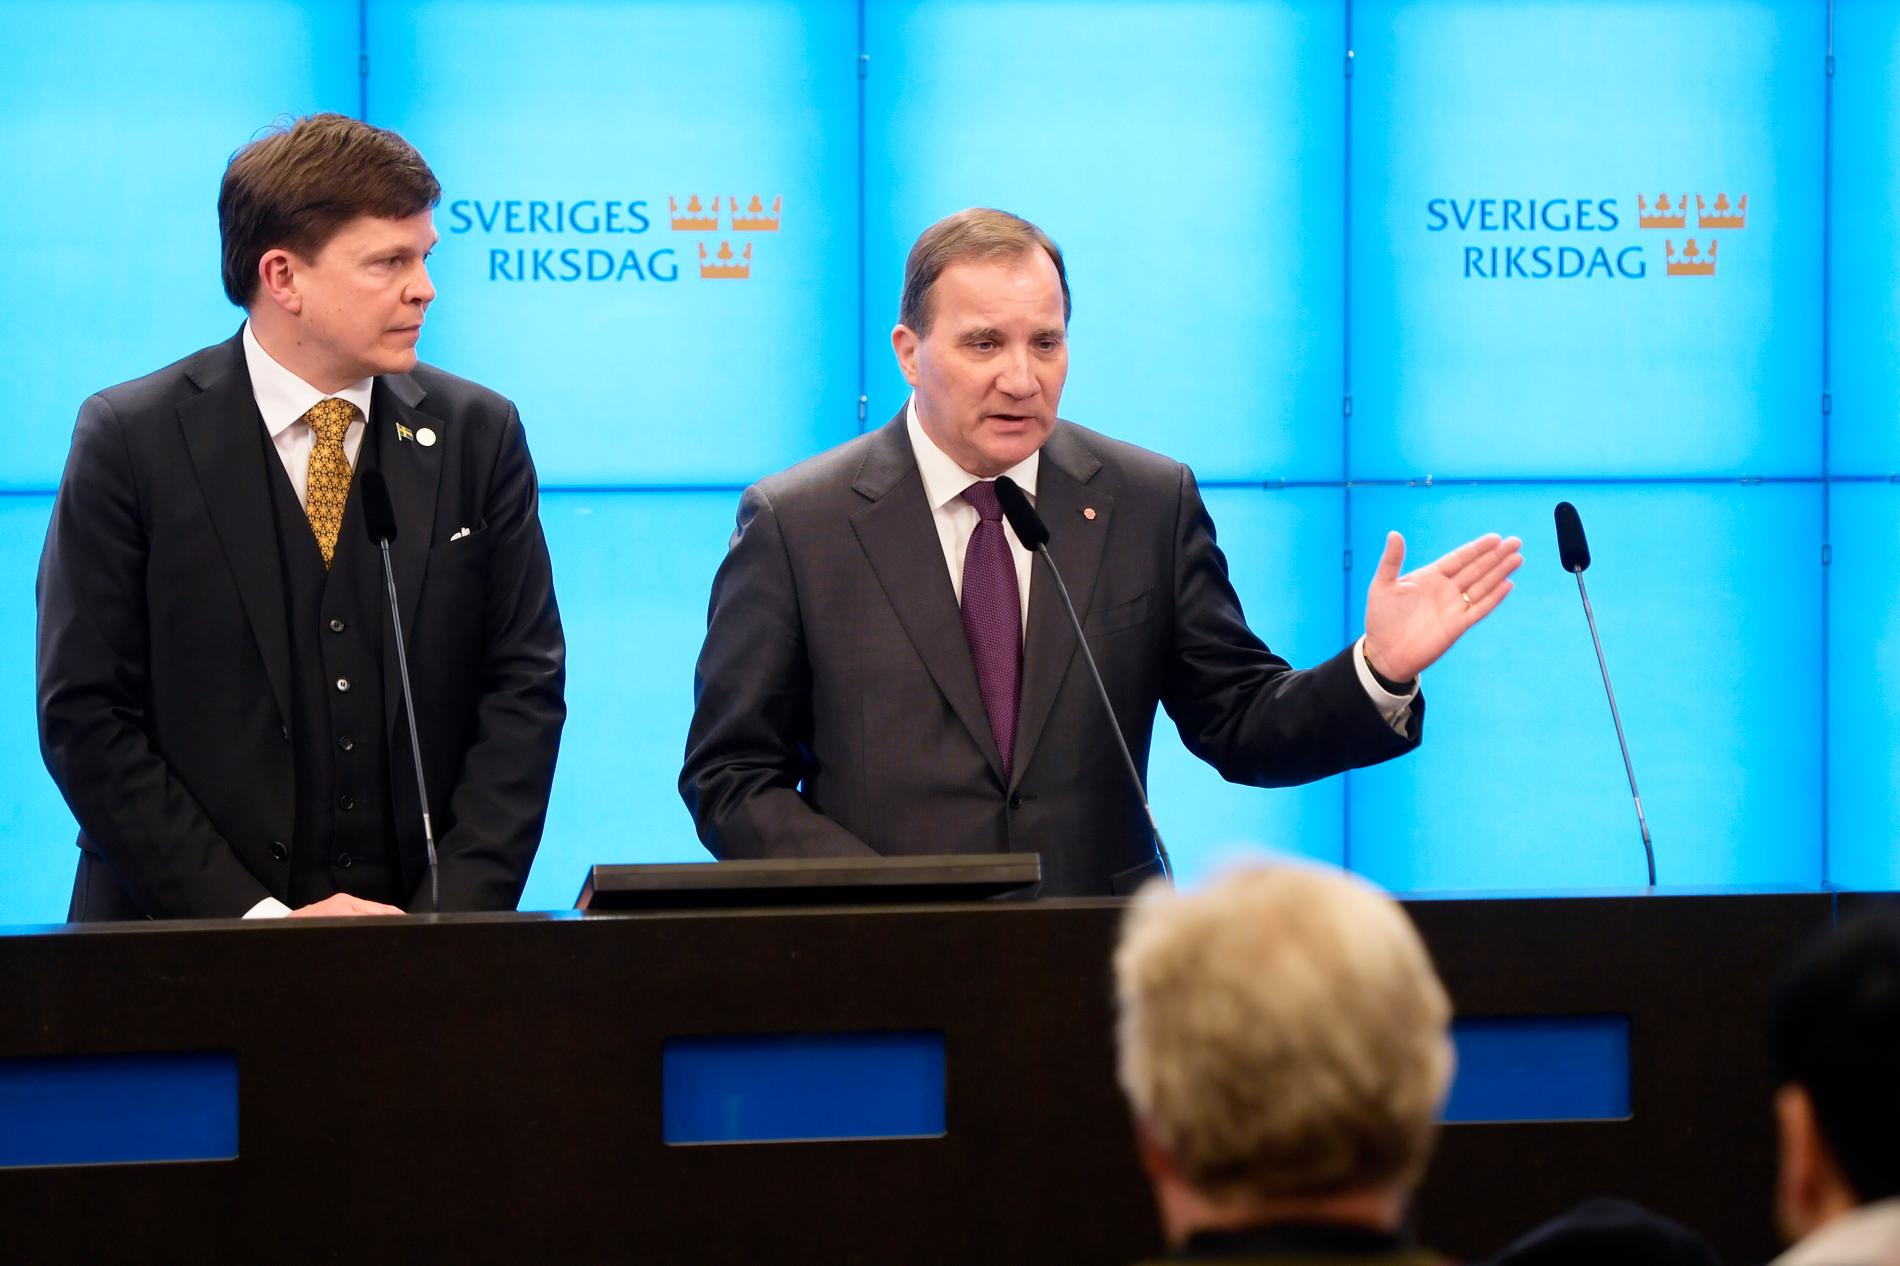 De tog 134 dagar för riksdagen och talmannen Andreas Norlén (tv) att komma till ett slut och få en ny regering, med Stefan Löfven (S), på plats. Arkivbild.